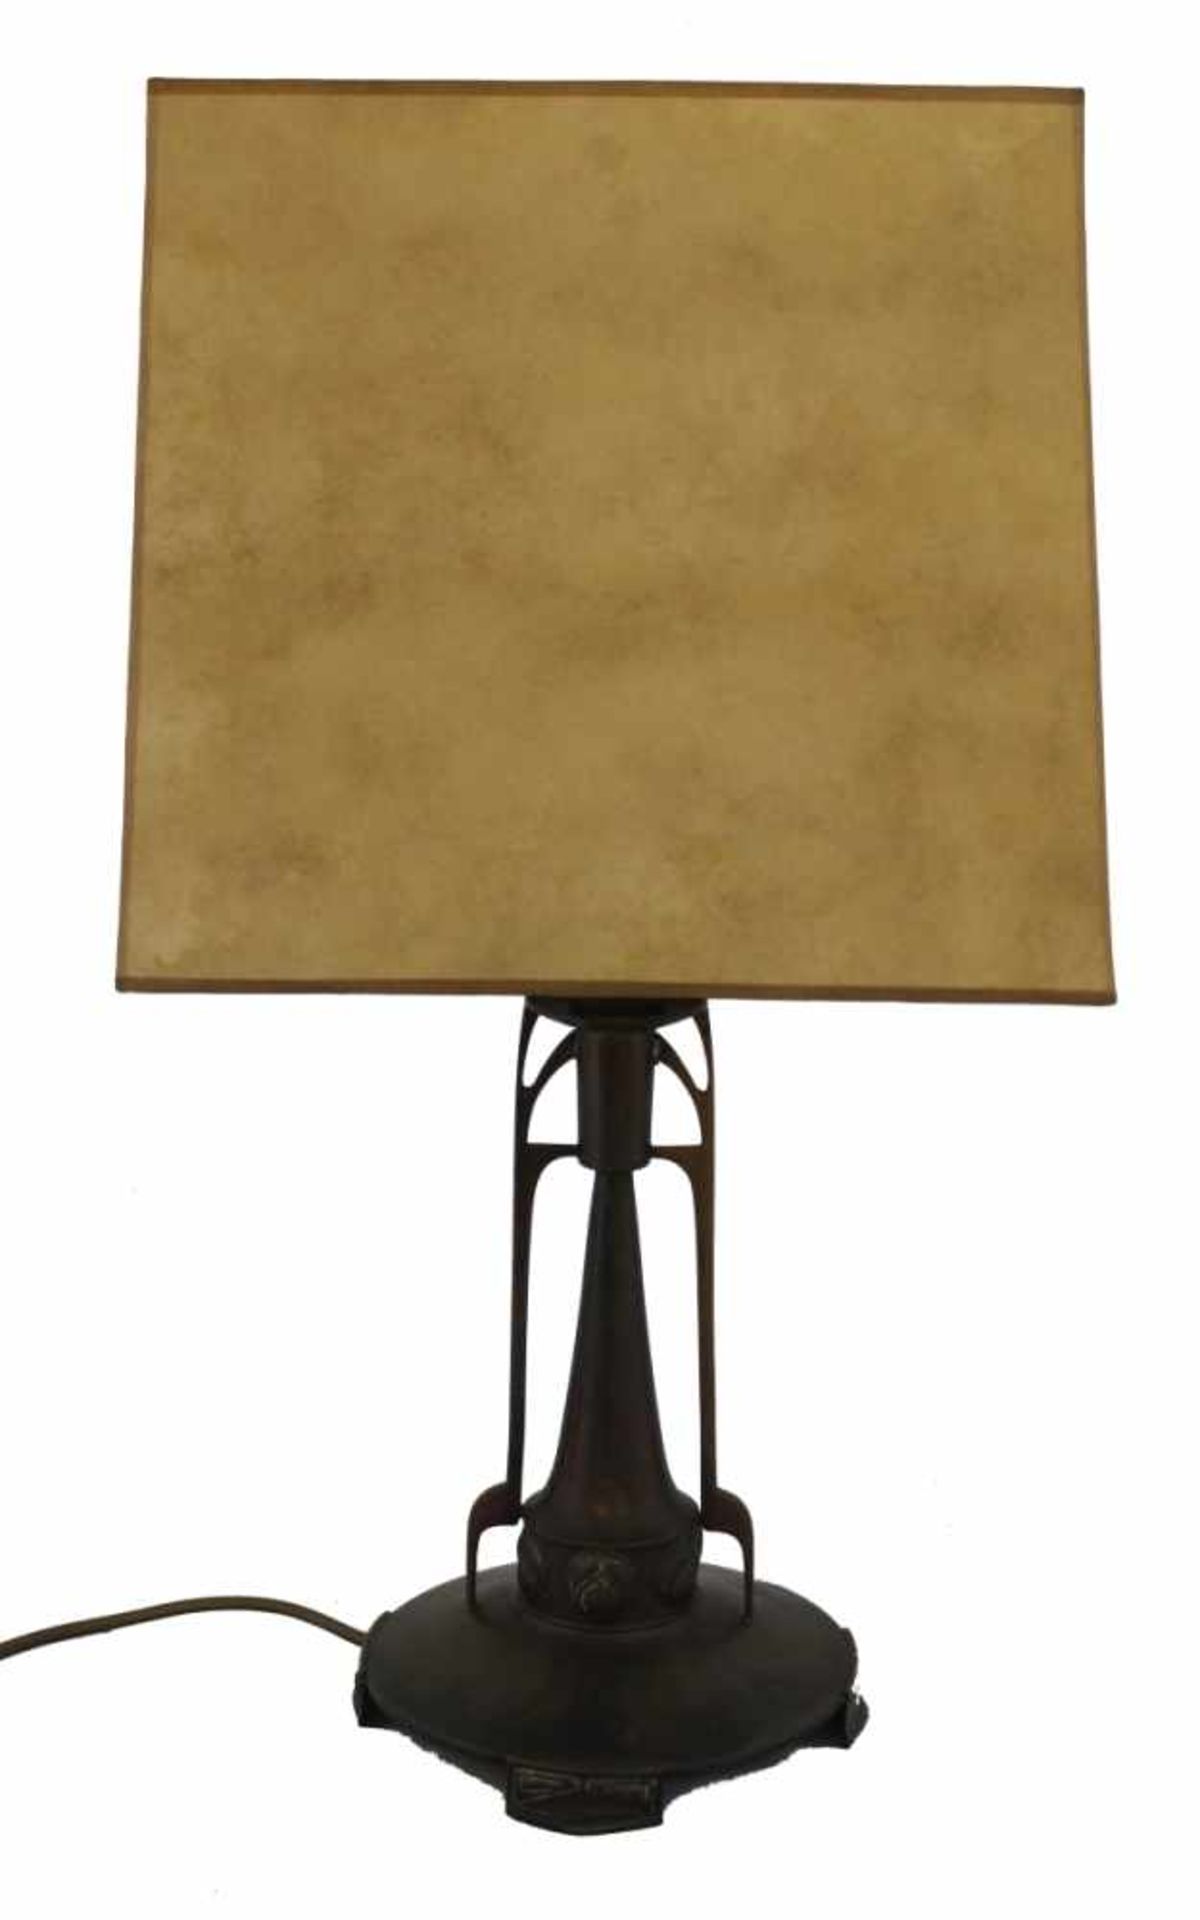 Tischlampe - deutsch nach 1900 Messing, verziert mit Jugendstilornamenten, 1-armig, Höhe ca. 60 cm